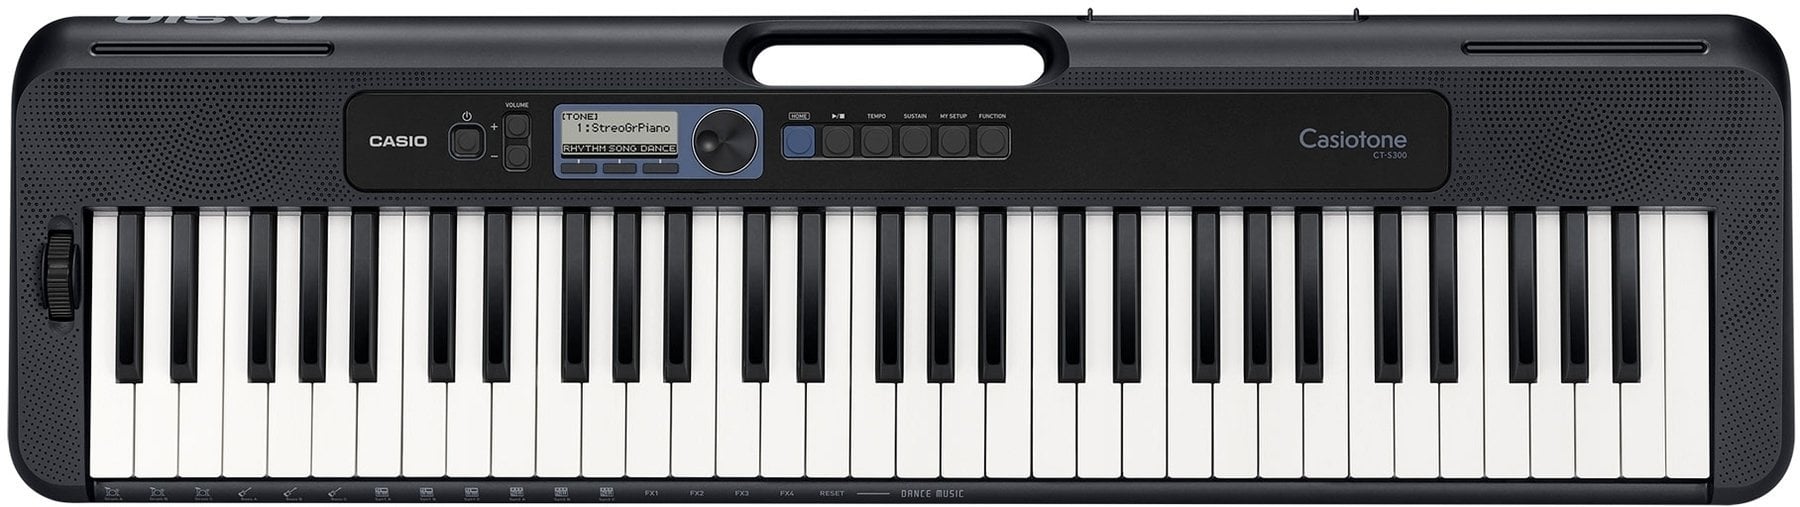 Keyboard mit Touch Response Casio CT-S300